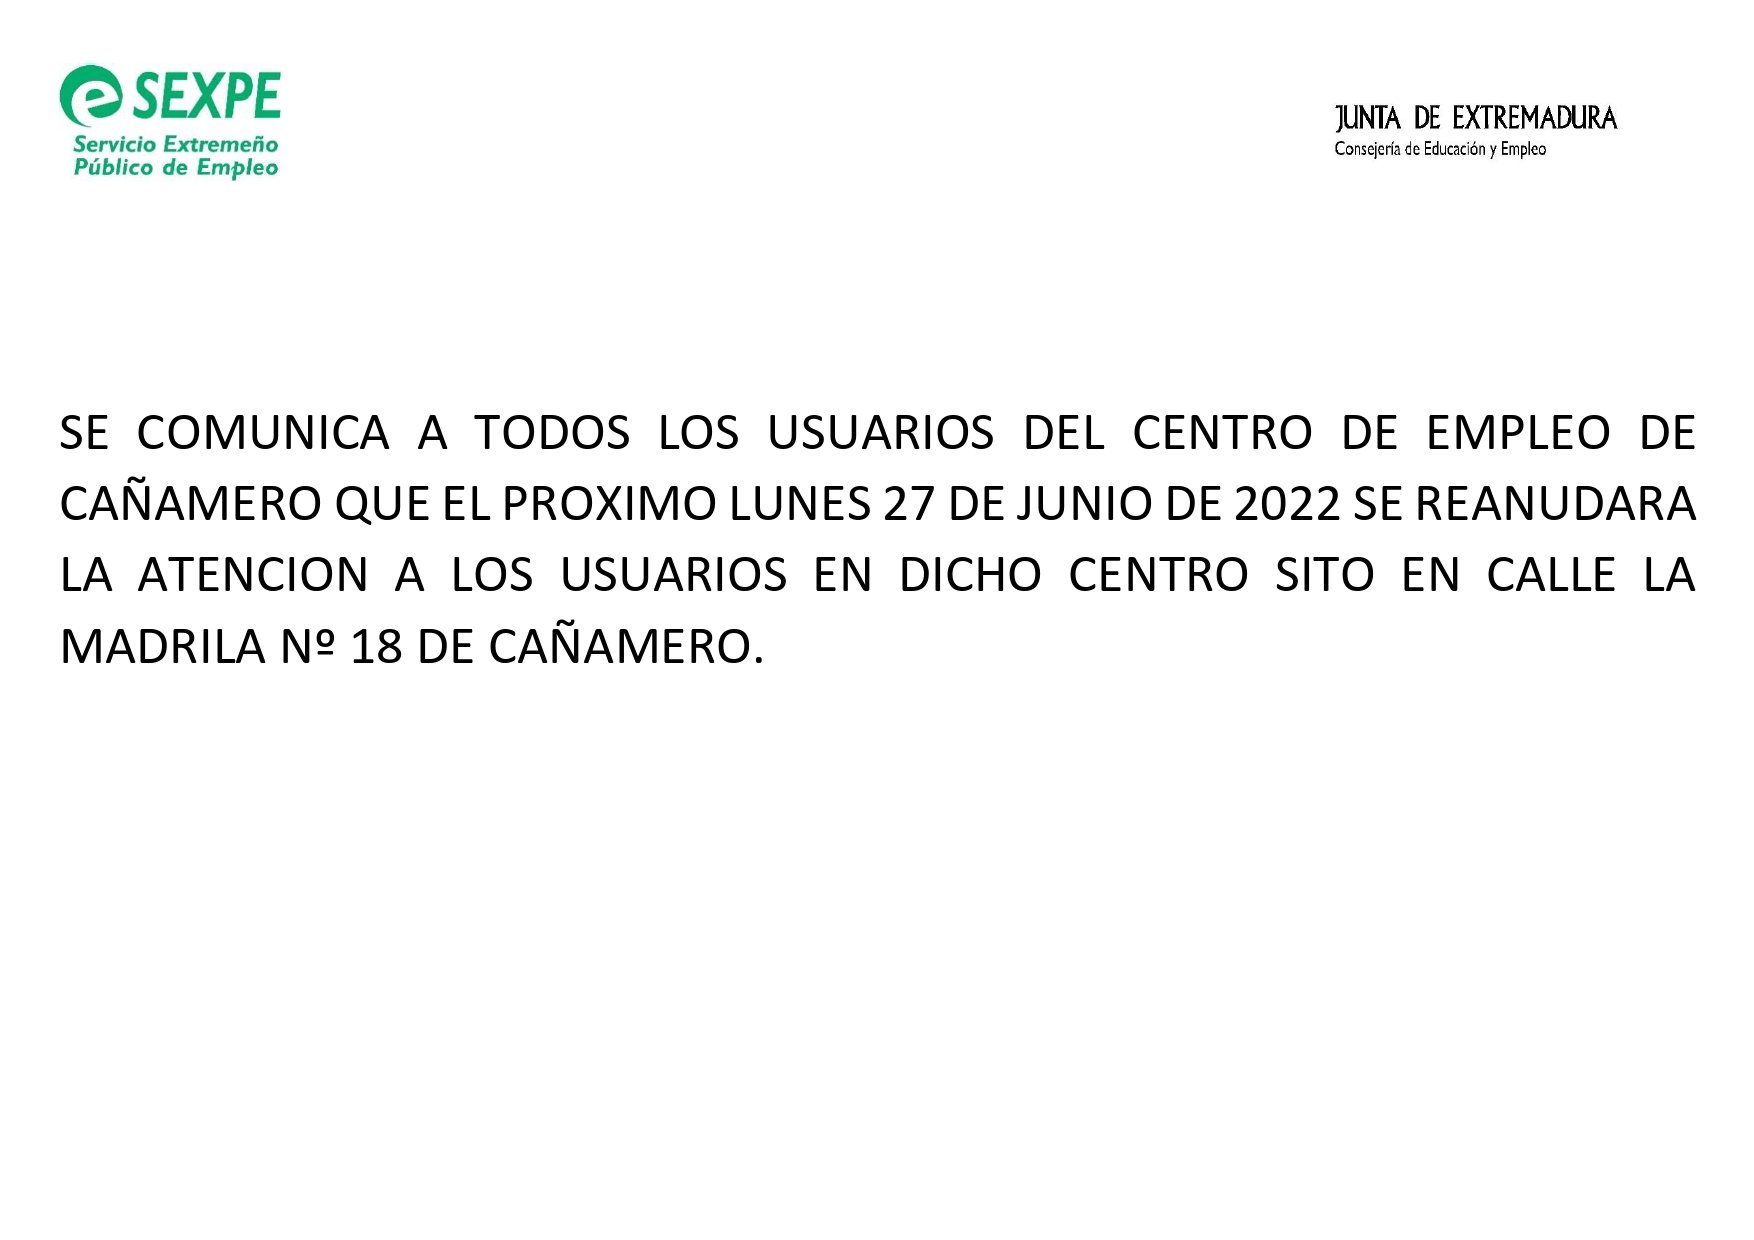 Reanudación del centro de empleo (junio 2022) - Cañamero (Cáceres)